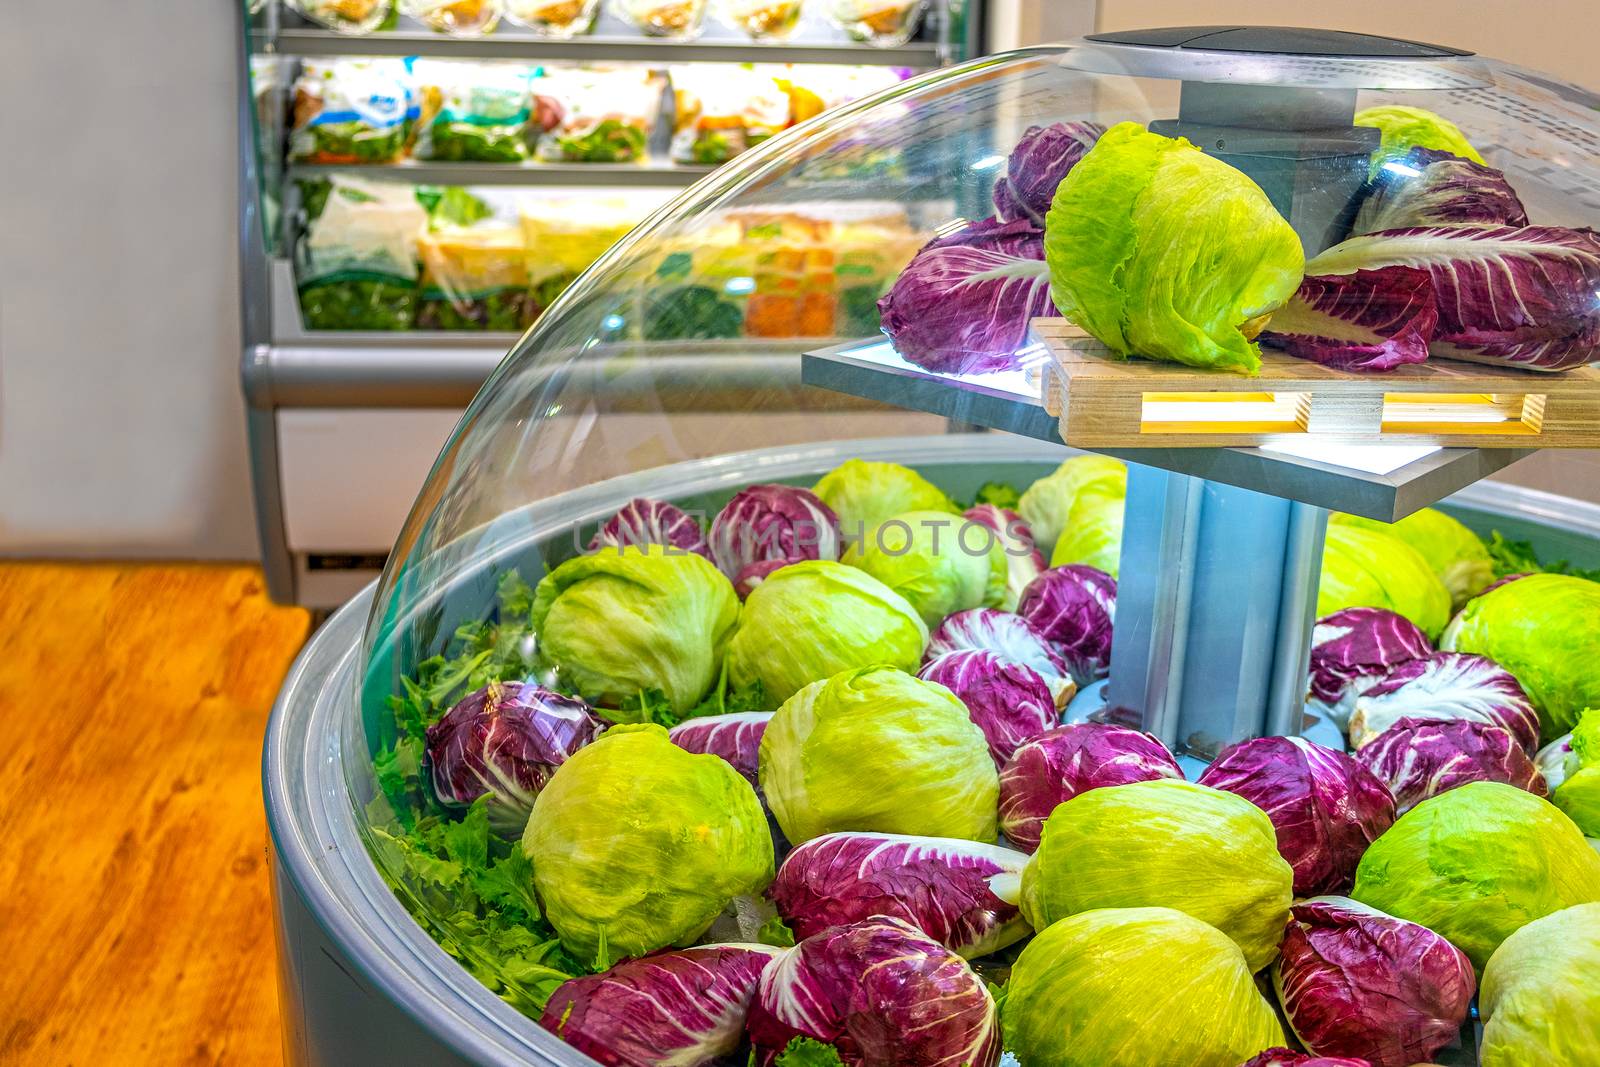 vegetable market refrigerator lettuce salad at supermarket .